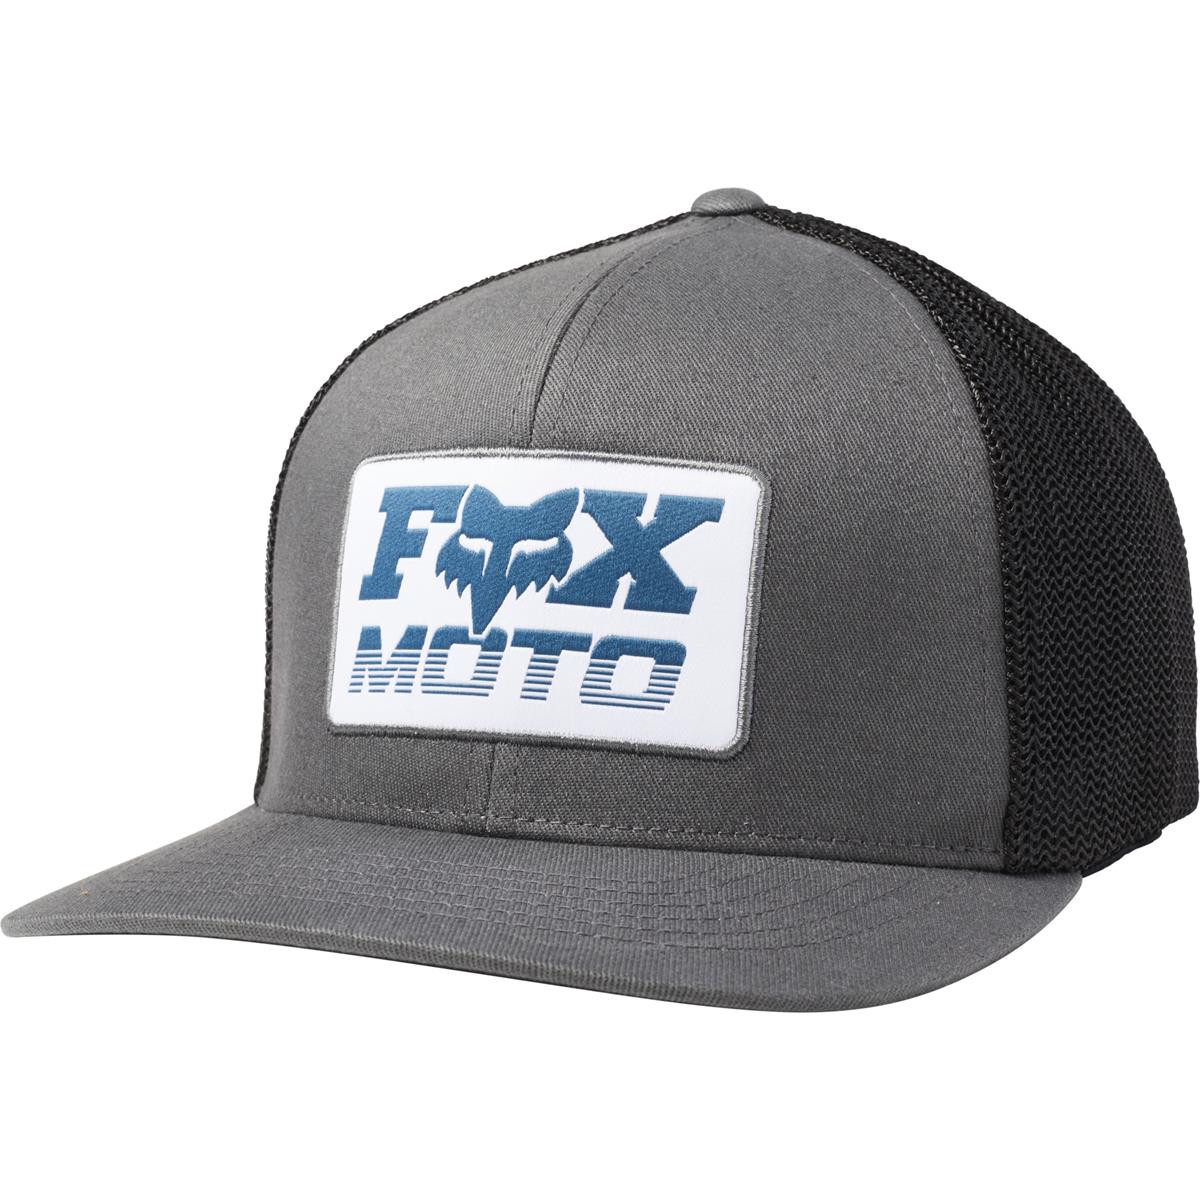 Fox Flexfit Cap Charger Pewter